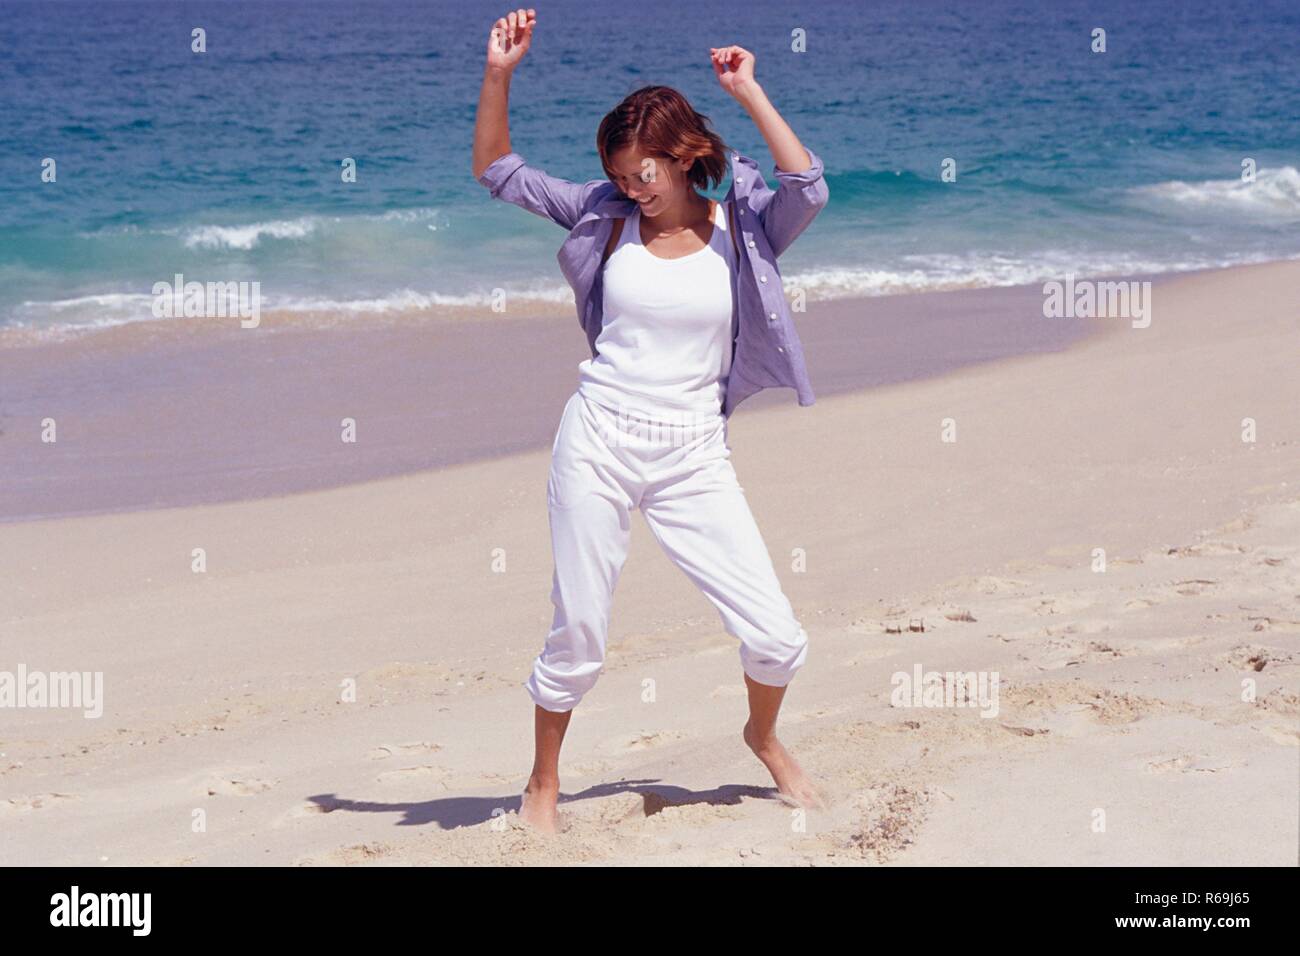 Strandszene, Ritratto, Ganzfigur, junge Frau mit glatten braunen Haaren, bekleidet mit weisser flessibile, T-Shirt und blauem Hemd tanzt barfuss am Strand Foto Stock